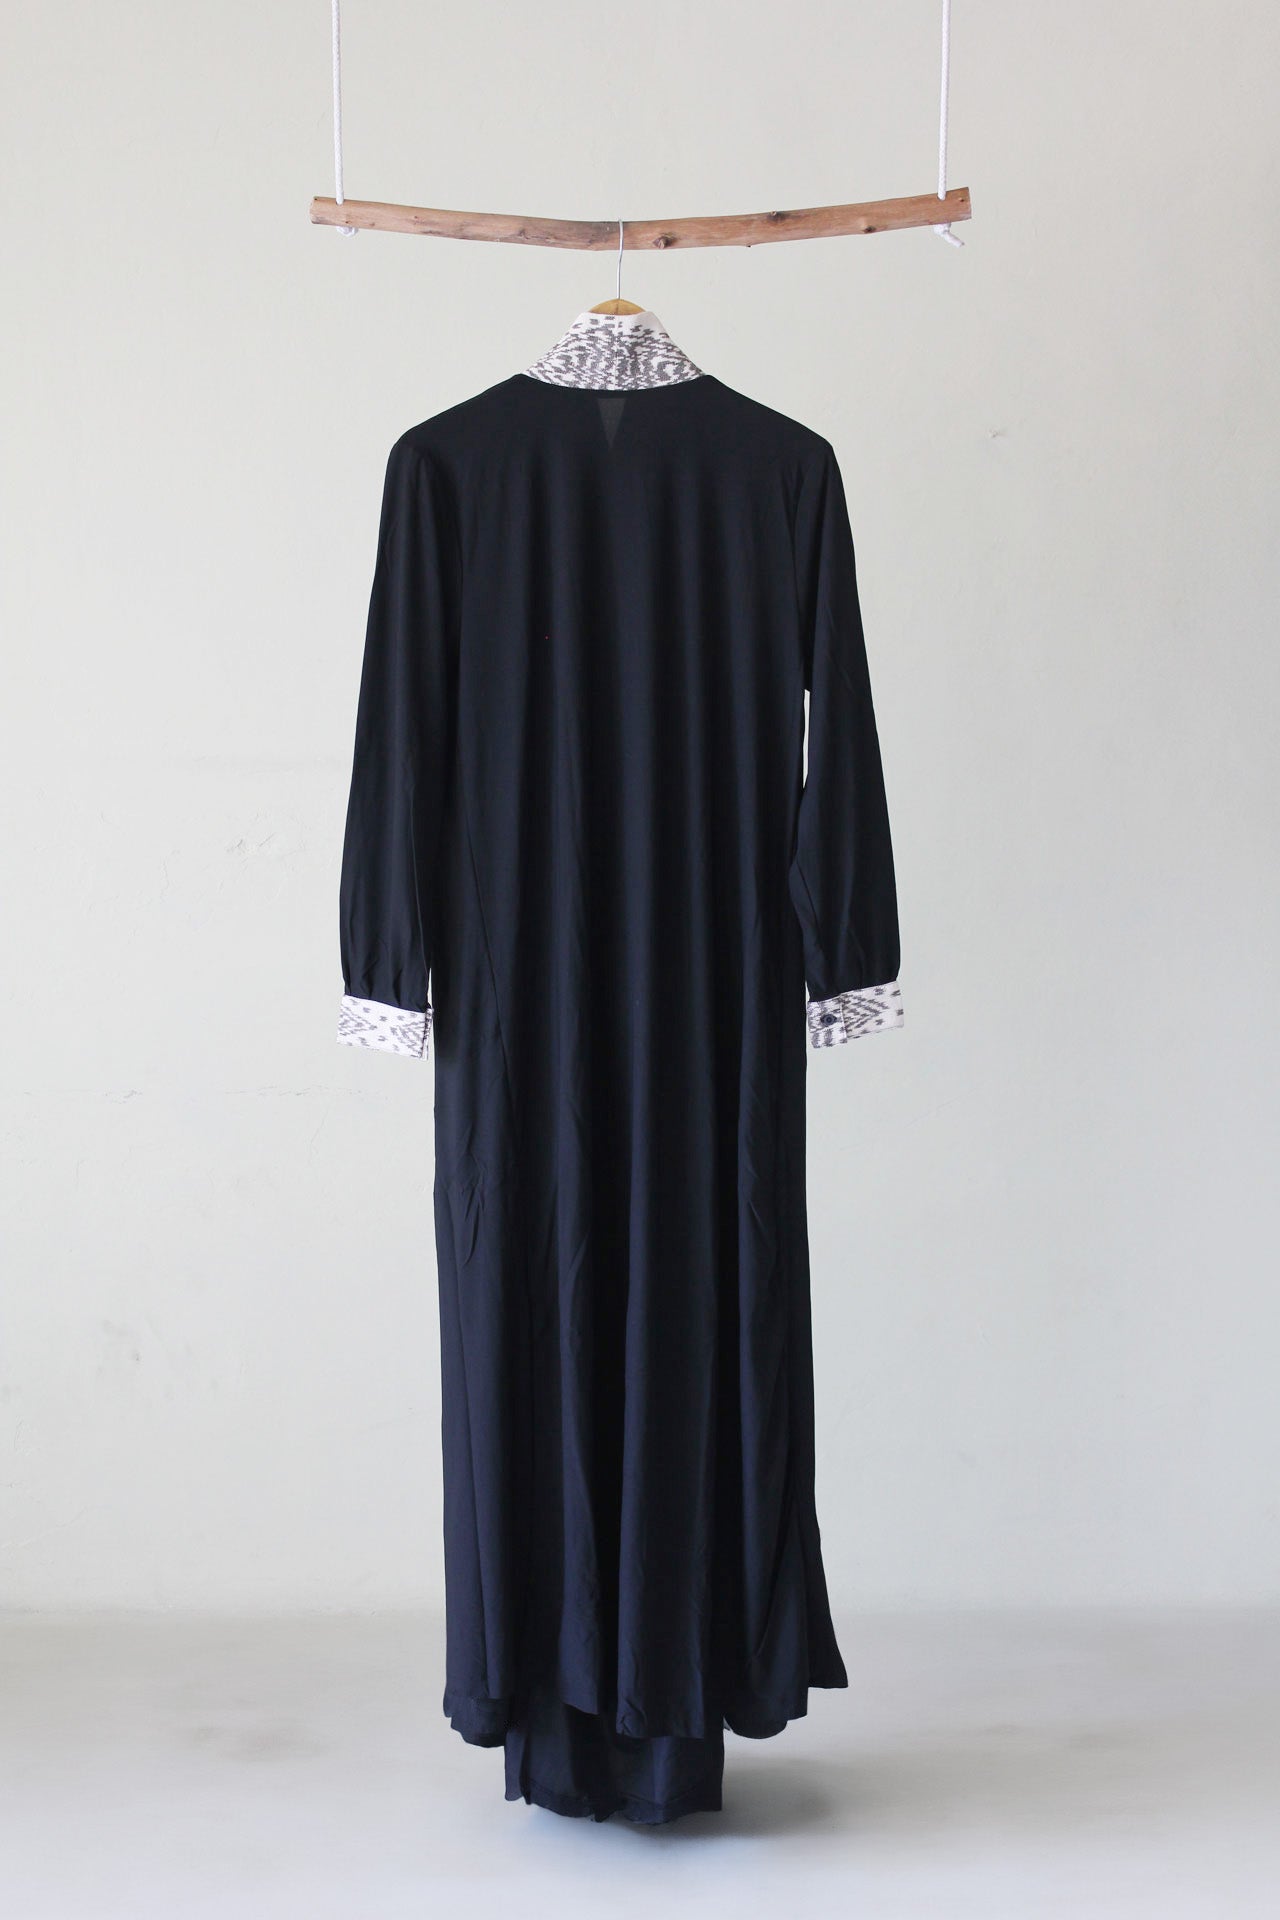 Draperi Tenun Abaya Dress